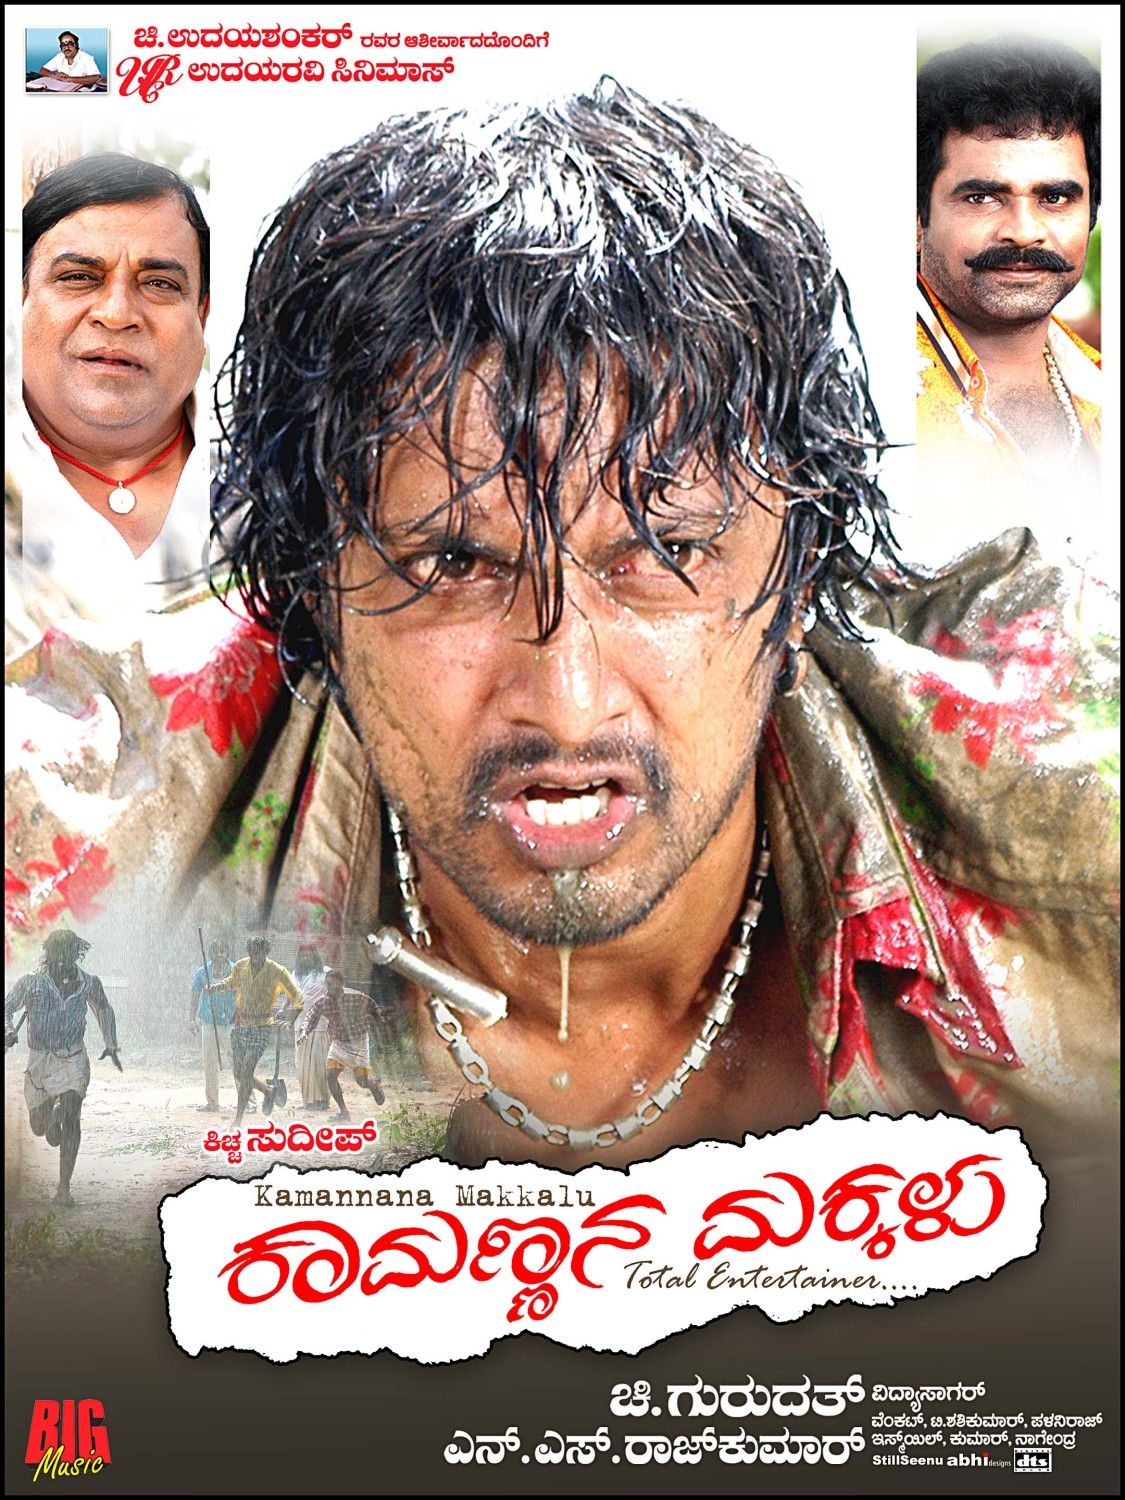 Extra Large Movie Poster Image for Kamannana Makkalu (#6 of 17)